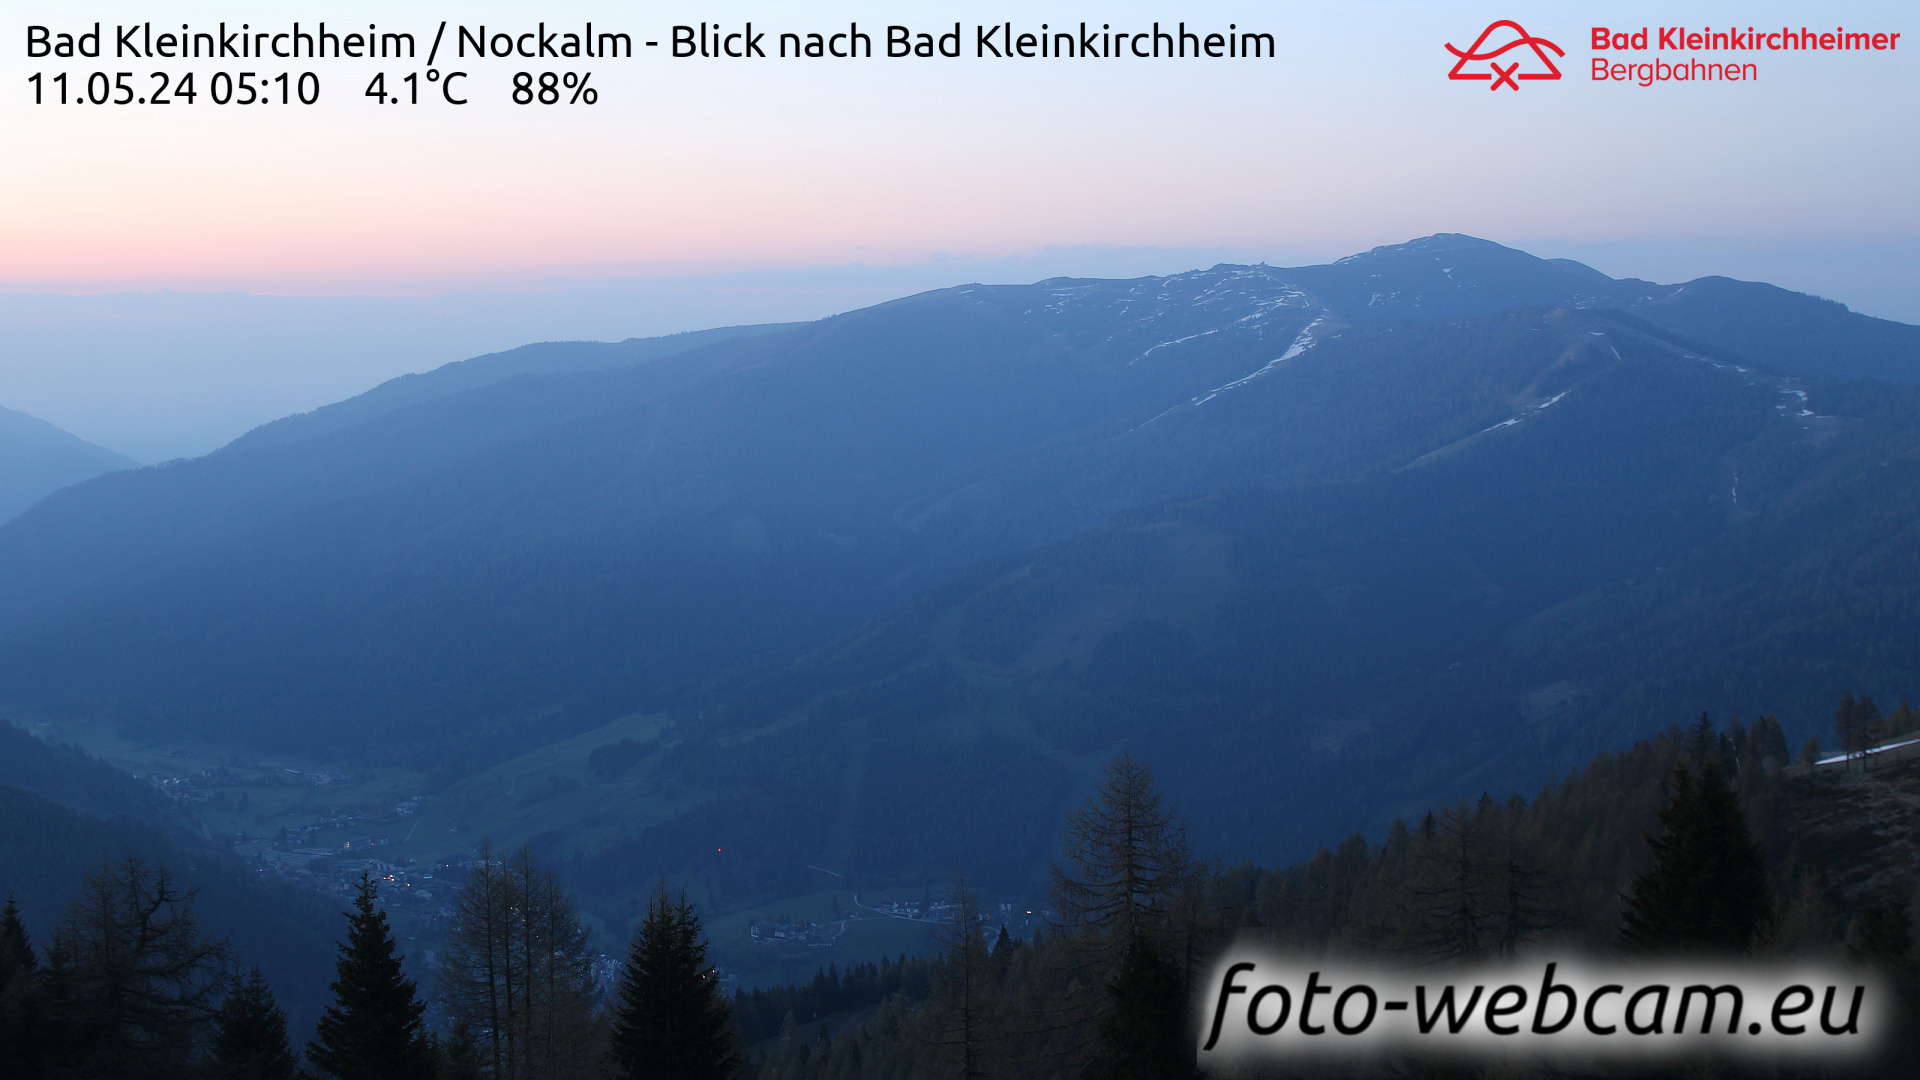 Bad Kleinkirchheim Do. 05:17